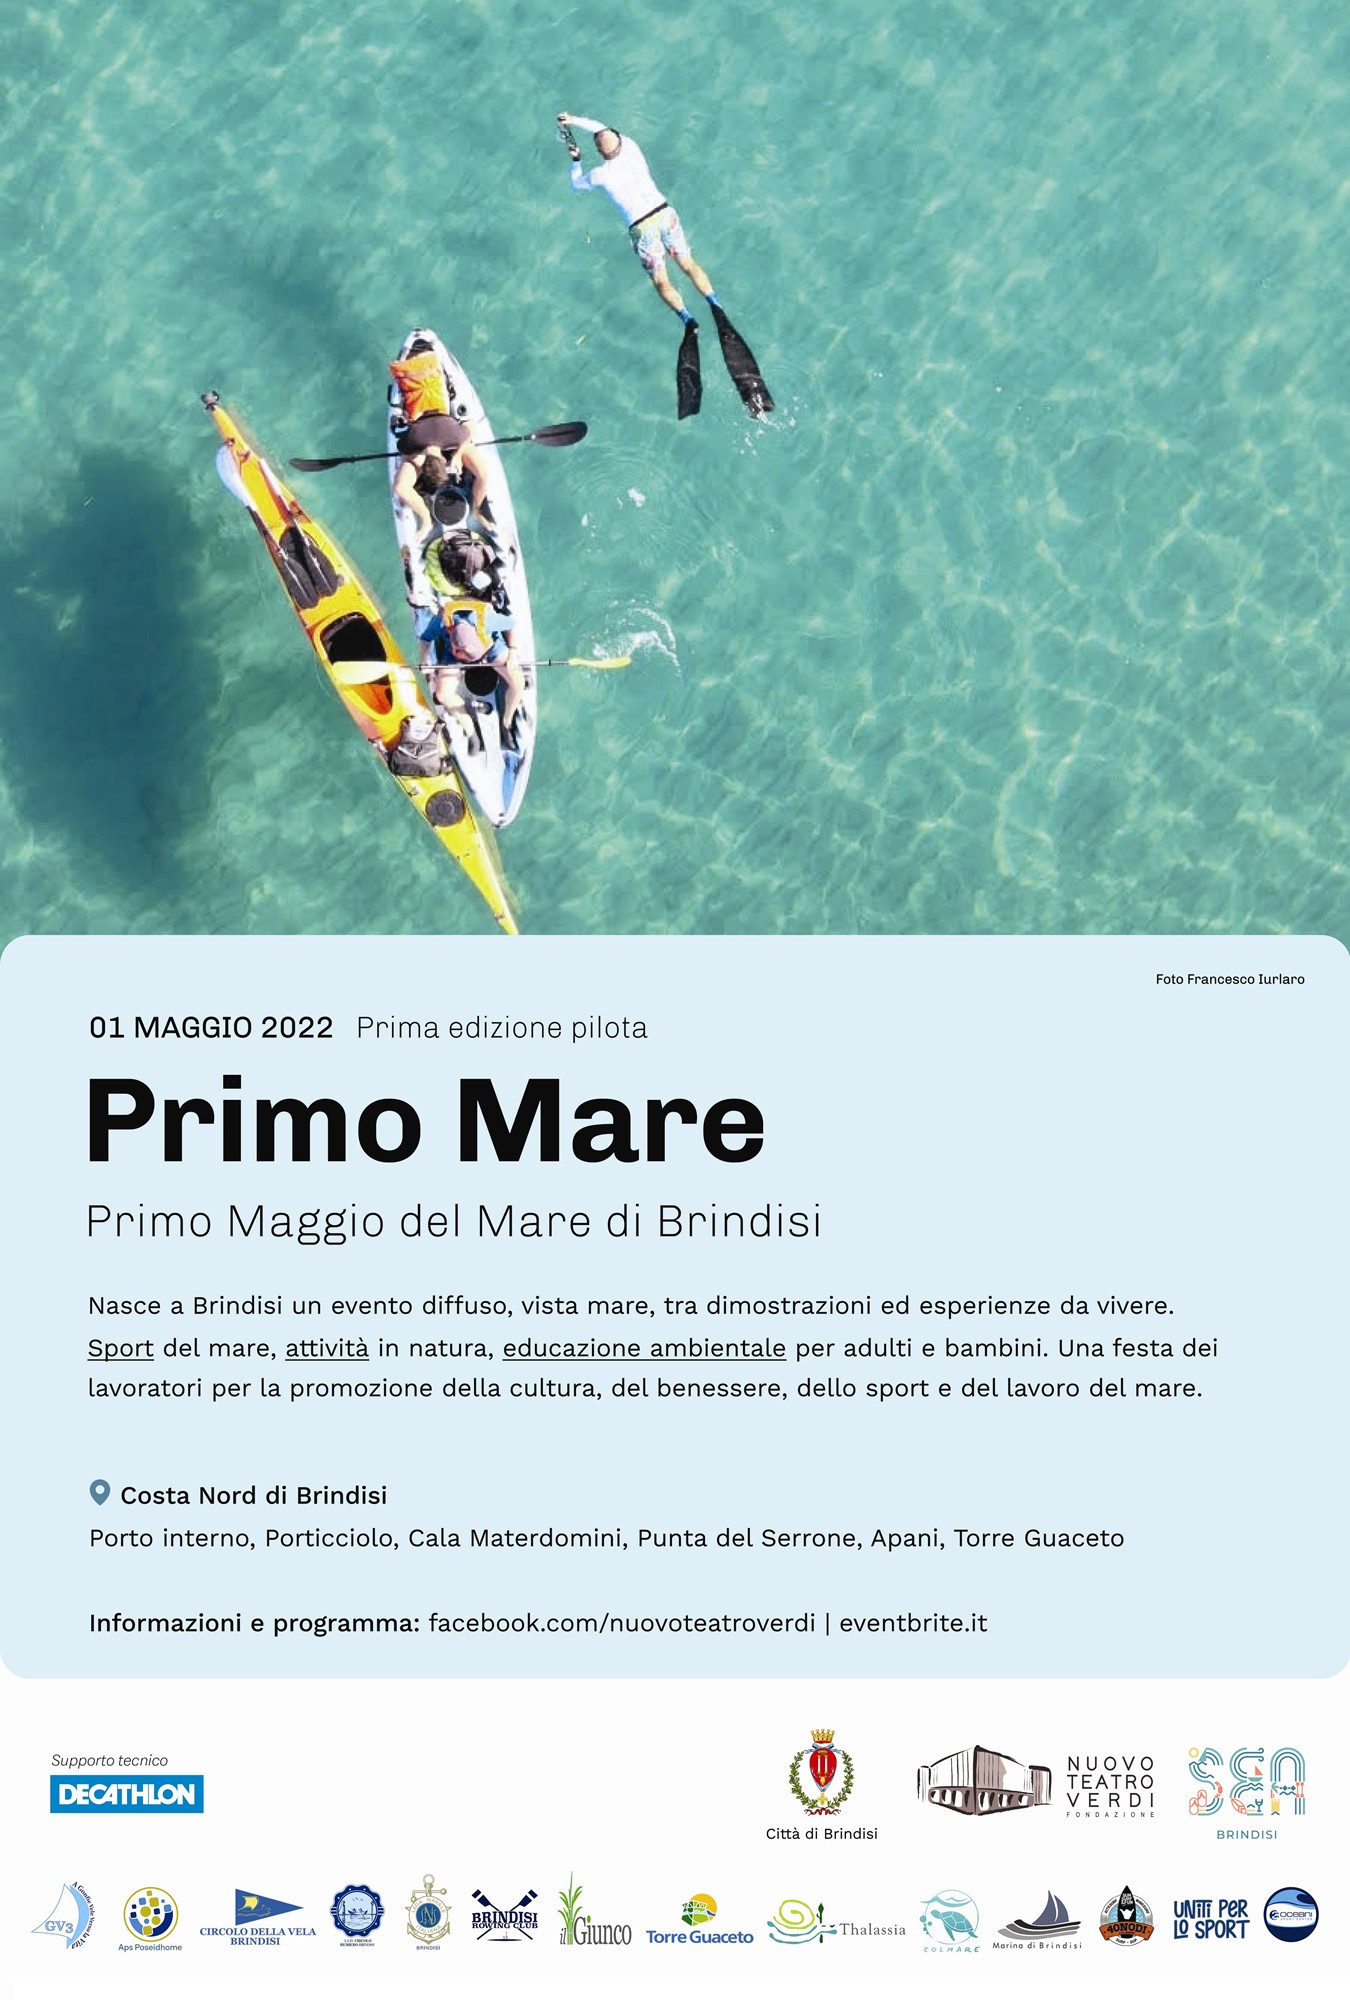 Presentato “Primo Mare”, il programma di iniziative per il primo maggio a Brindisi